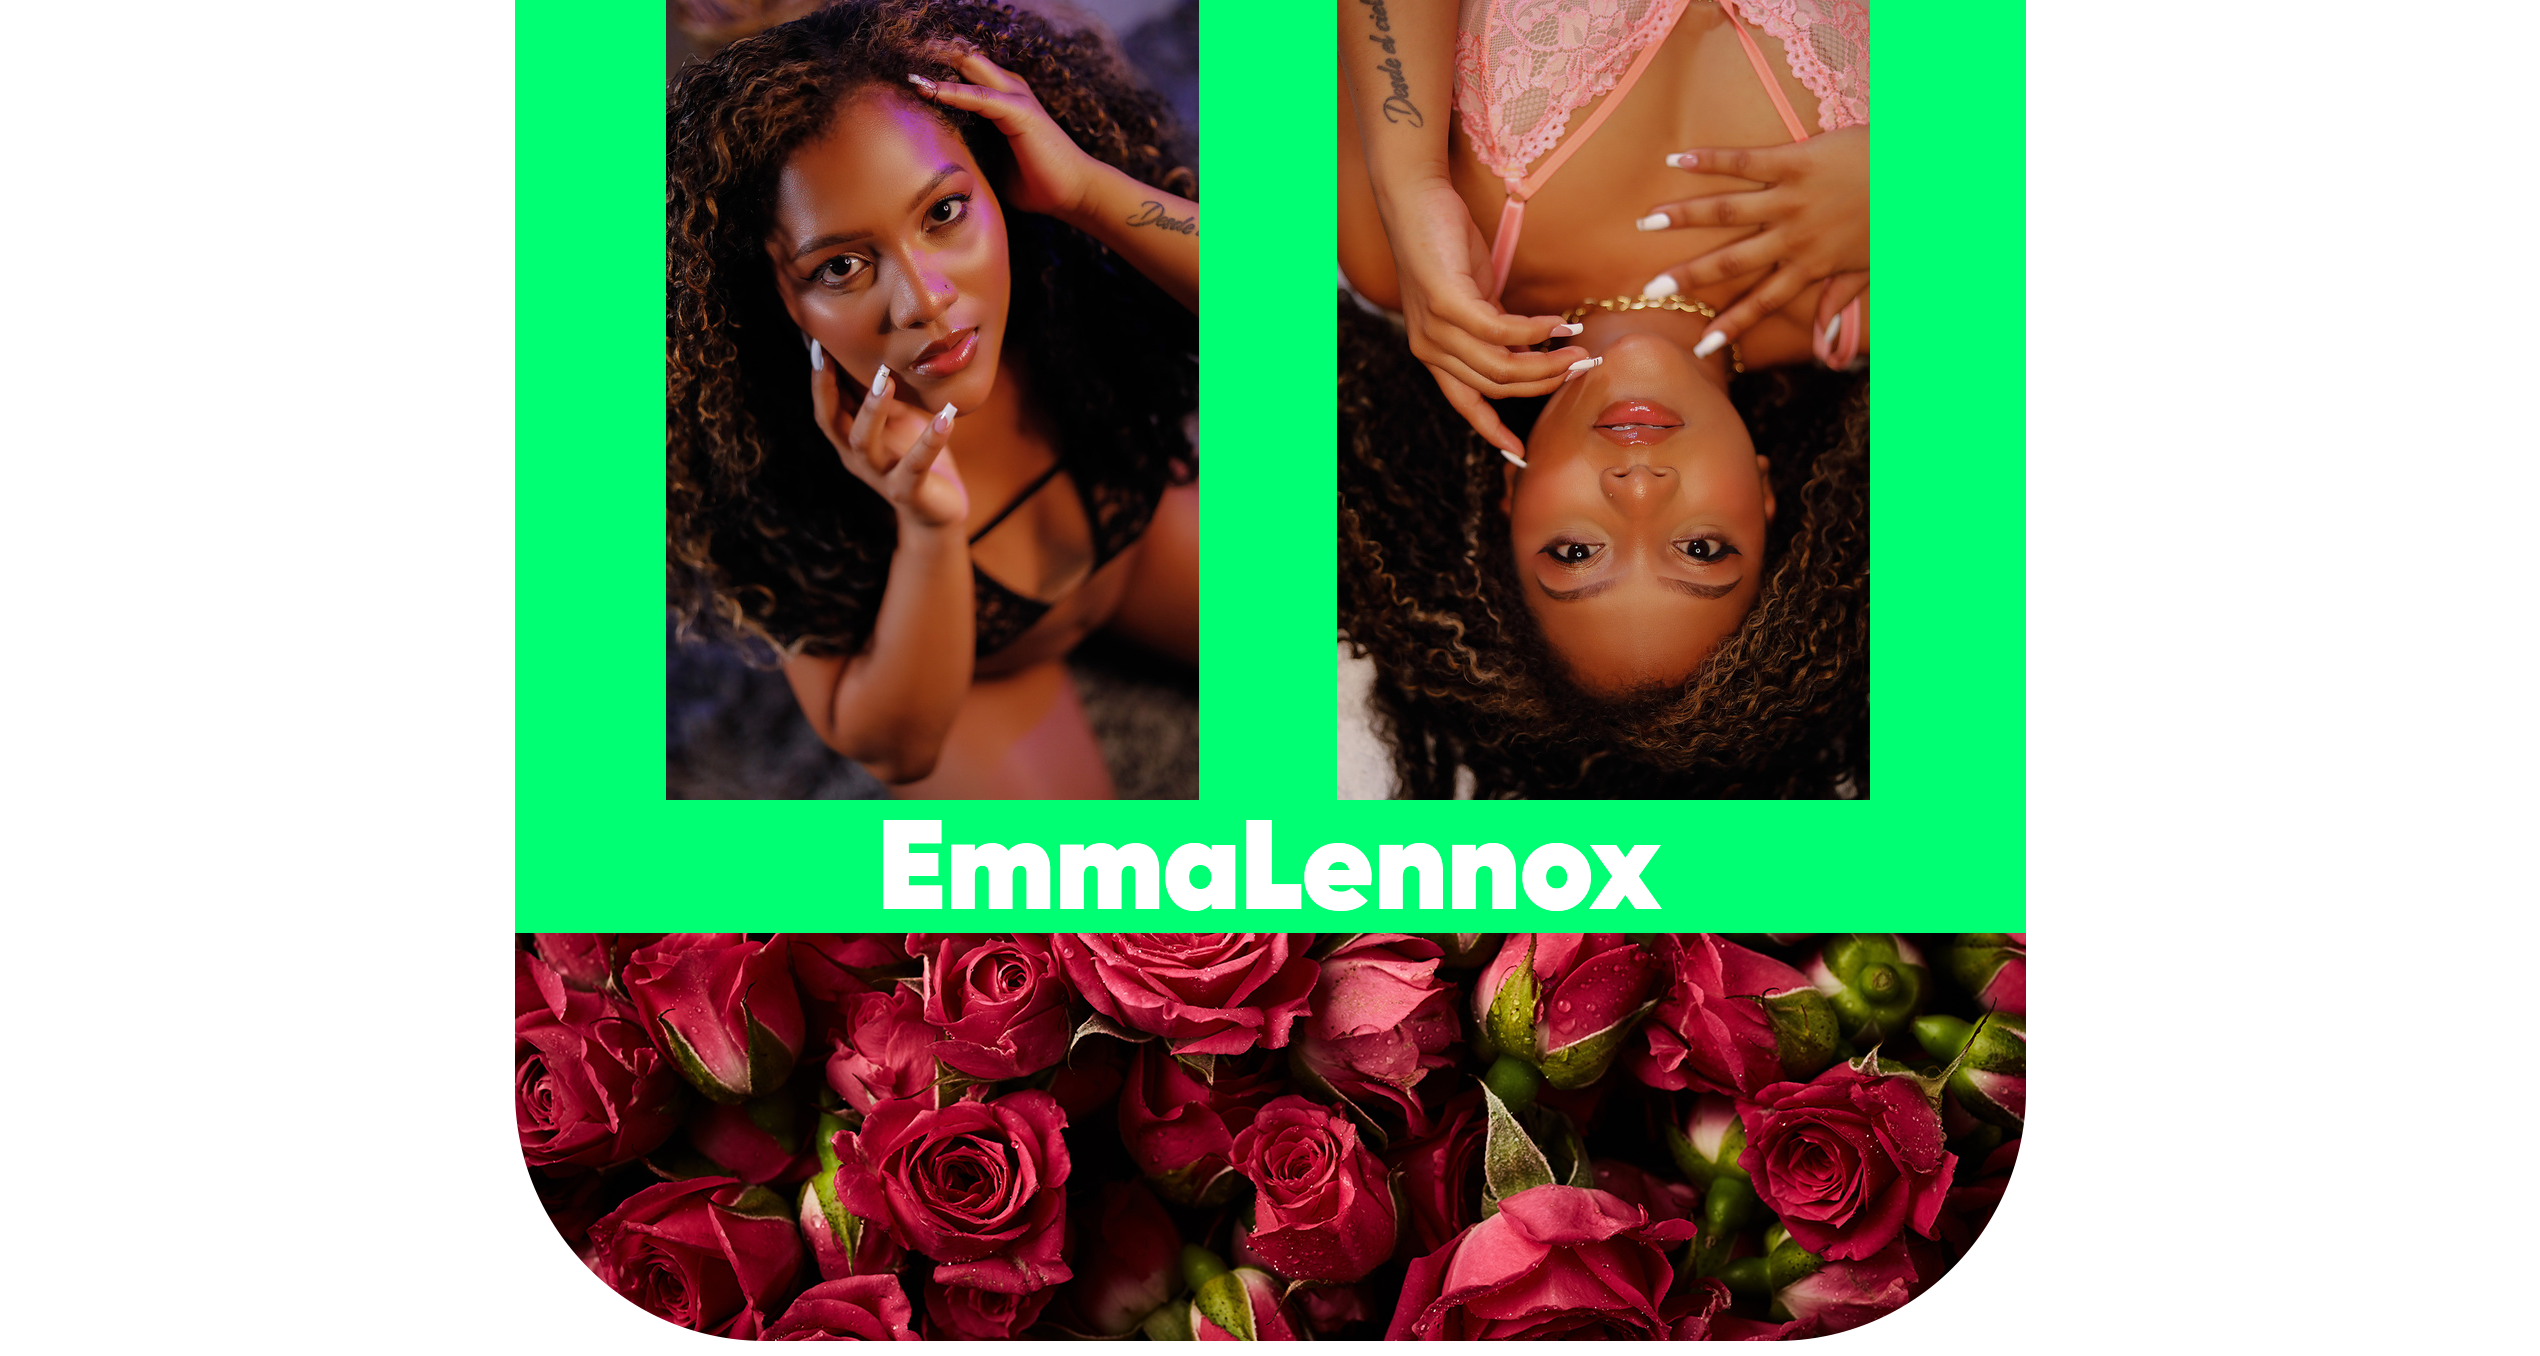 EmmaLennox Hello! image: 2